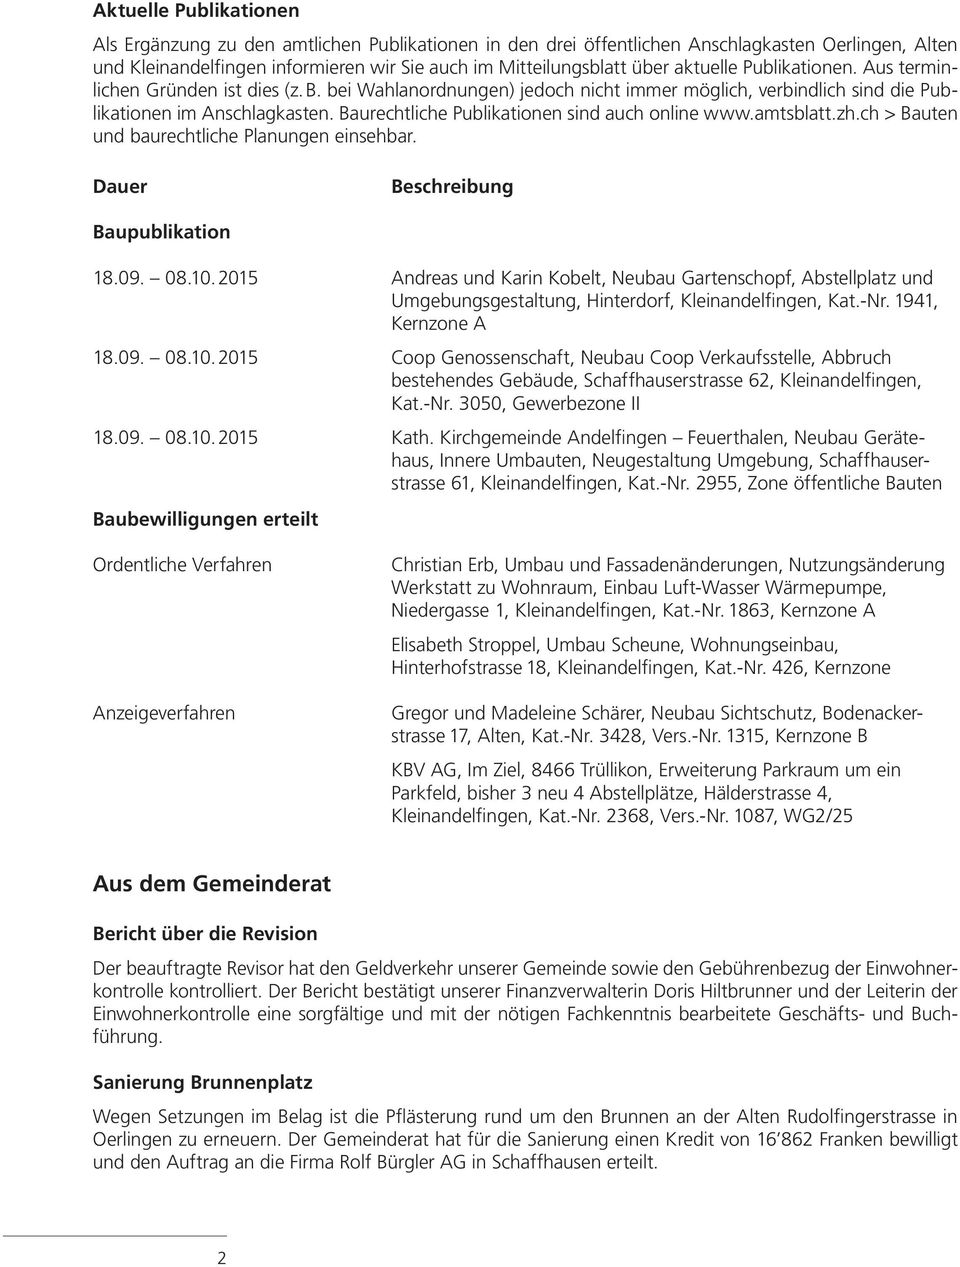 Baurechtliche Publikationen sind auch online www.amtsblatt.zh.ch > Bauten und baurechtliche Planungen einsehbar. Dauer Beschreibung Baupublikation 18.09. 08.10.